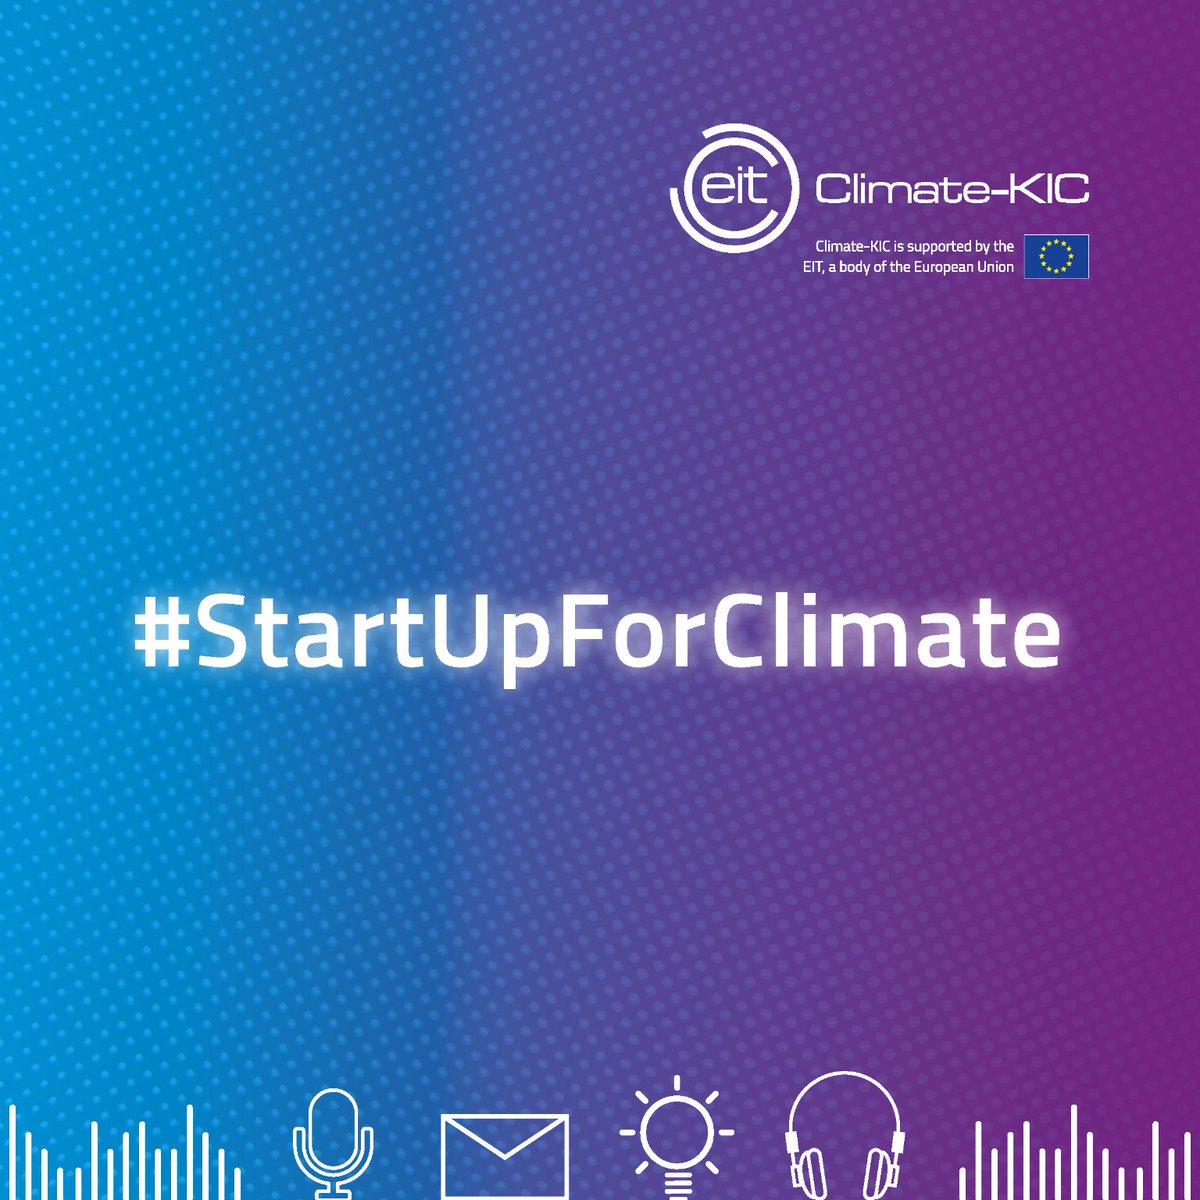 10 startup per i #cambiamenticlimatici @EITeu Climate-KIC promuove 10 soluzioni italiane per il clima che cambia. #IoT #energia #agricoltura #consumo #plastica: scopri gli imprenditori che vogliono salvare il pianeta! @Arter_ER @HIT_trentino @TnSviluppo #StartUpForClimate